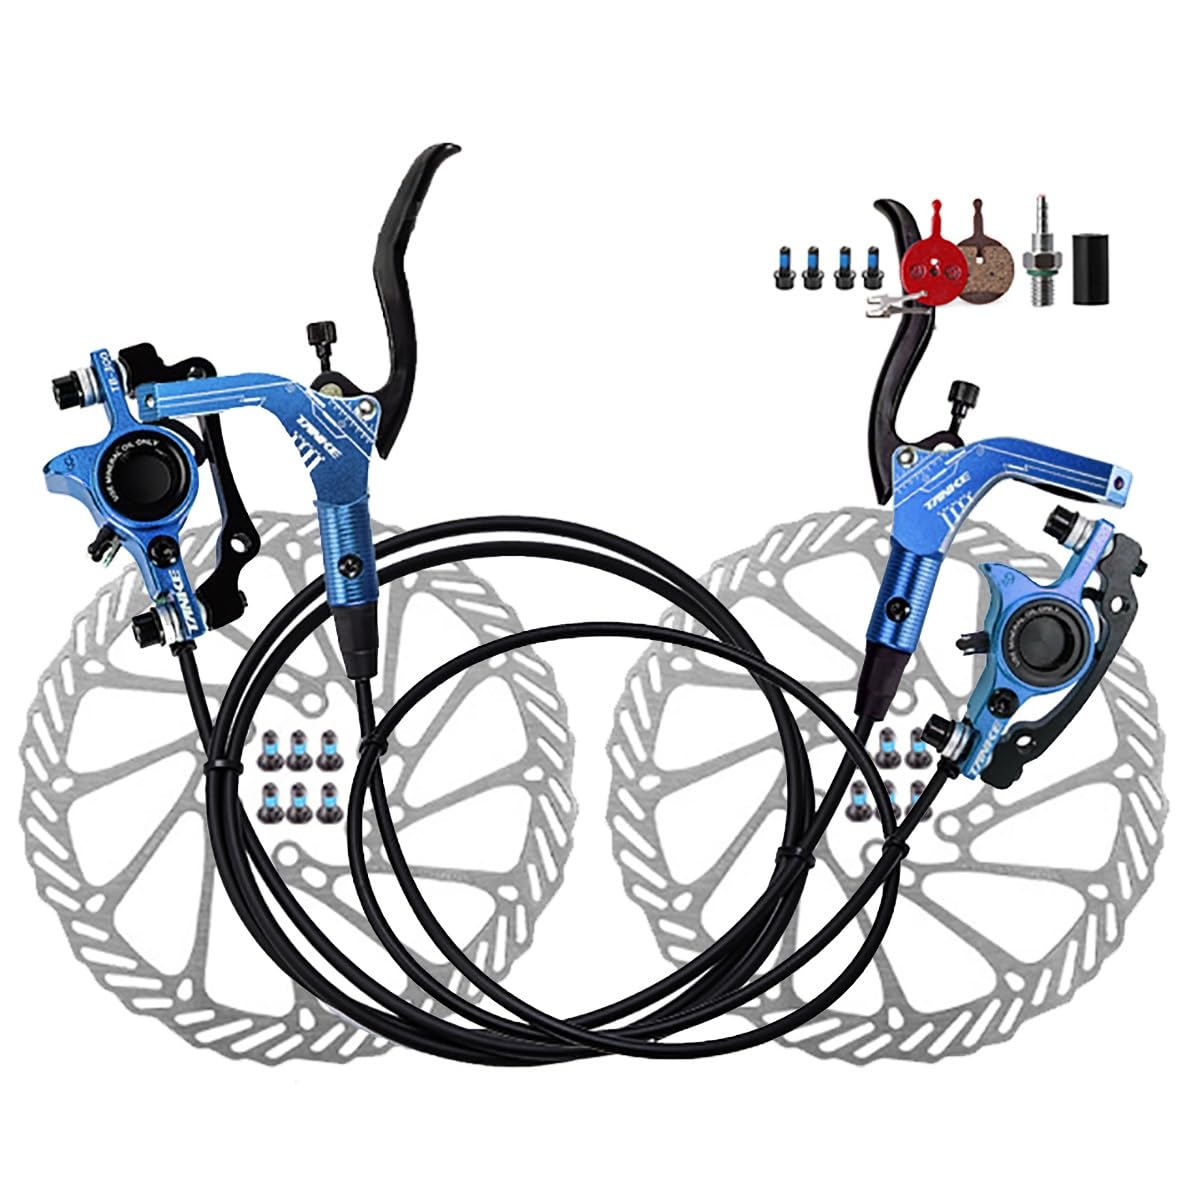 Fahrrad Hydraulische Scheibenbremse Set 2 Kolben Mountainbike Bremssattel Mit 160mm Rotoren 800mm Links Vorne 1400mm Rechts Hinten Bremsensatz (Color : Blue) von DFNBVDRR